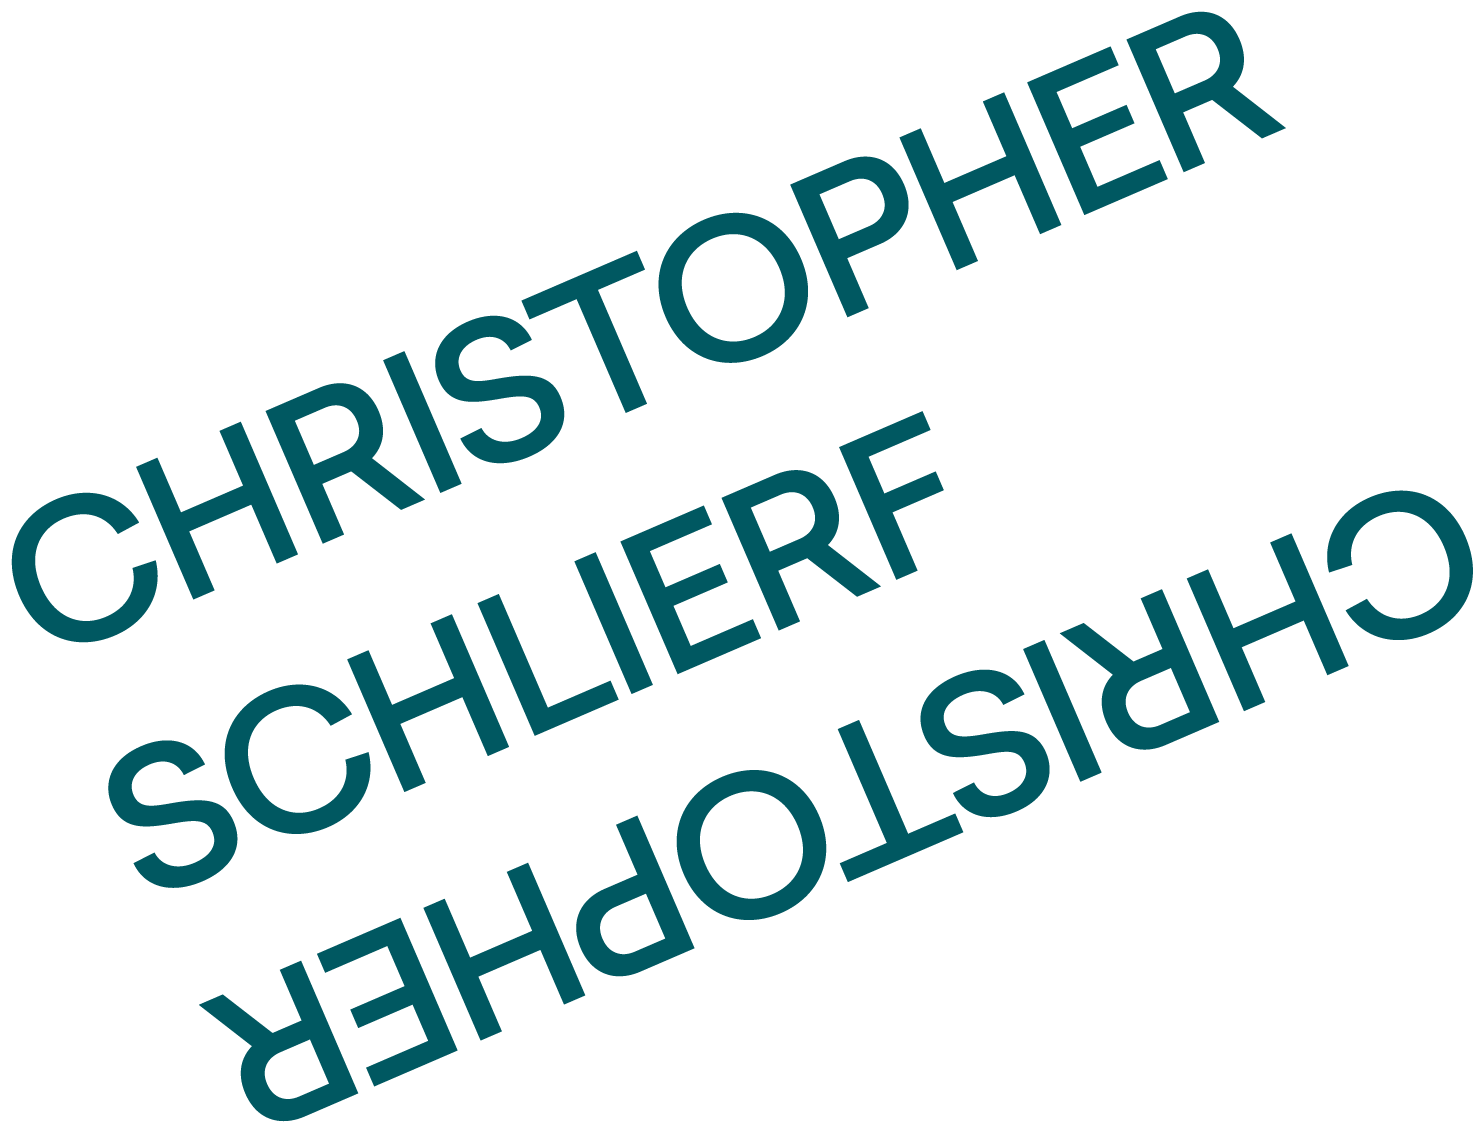 Christopher Schlierf